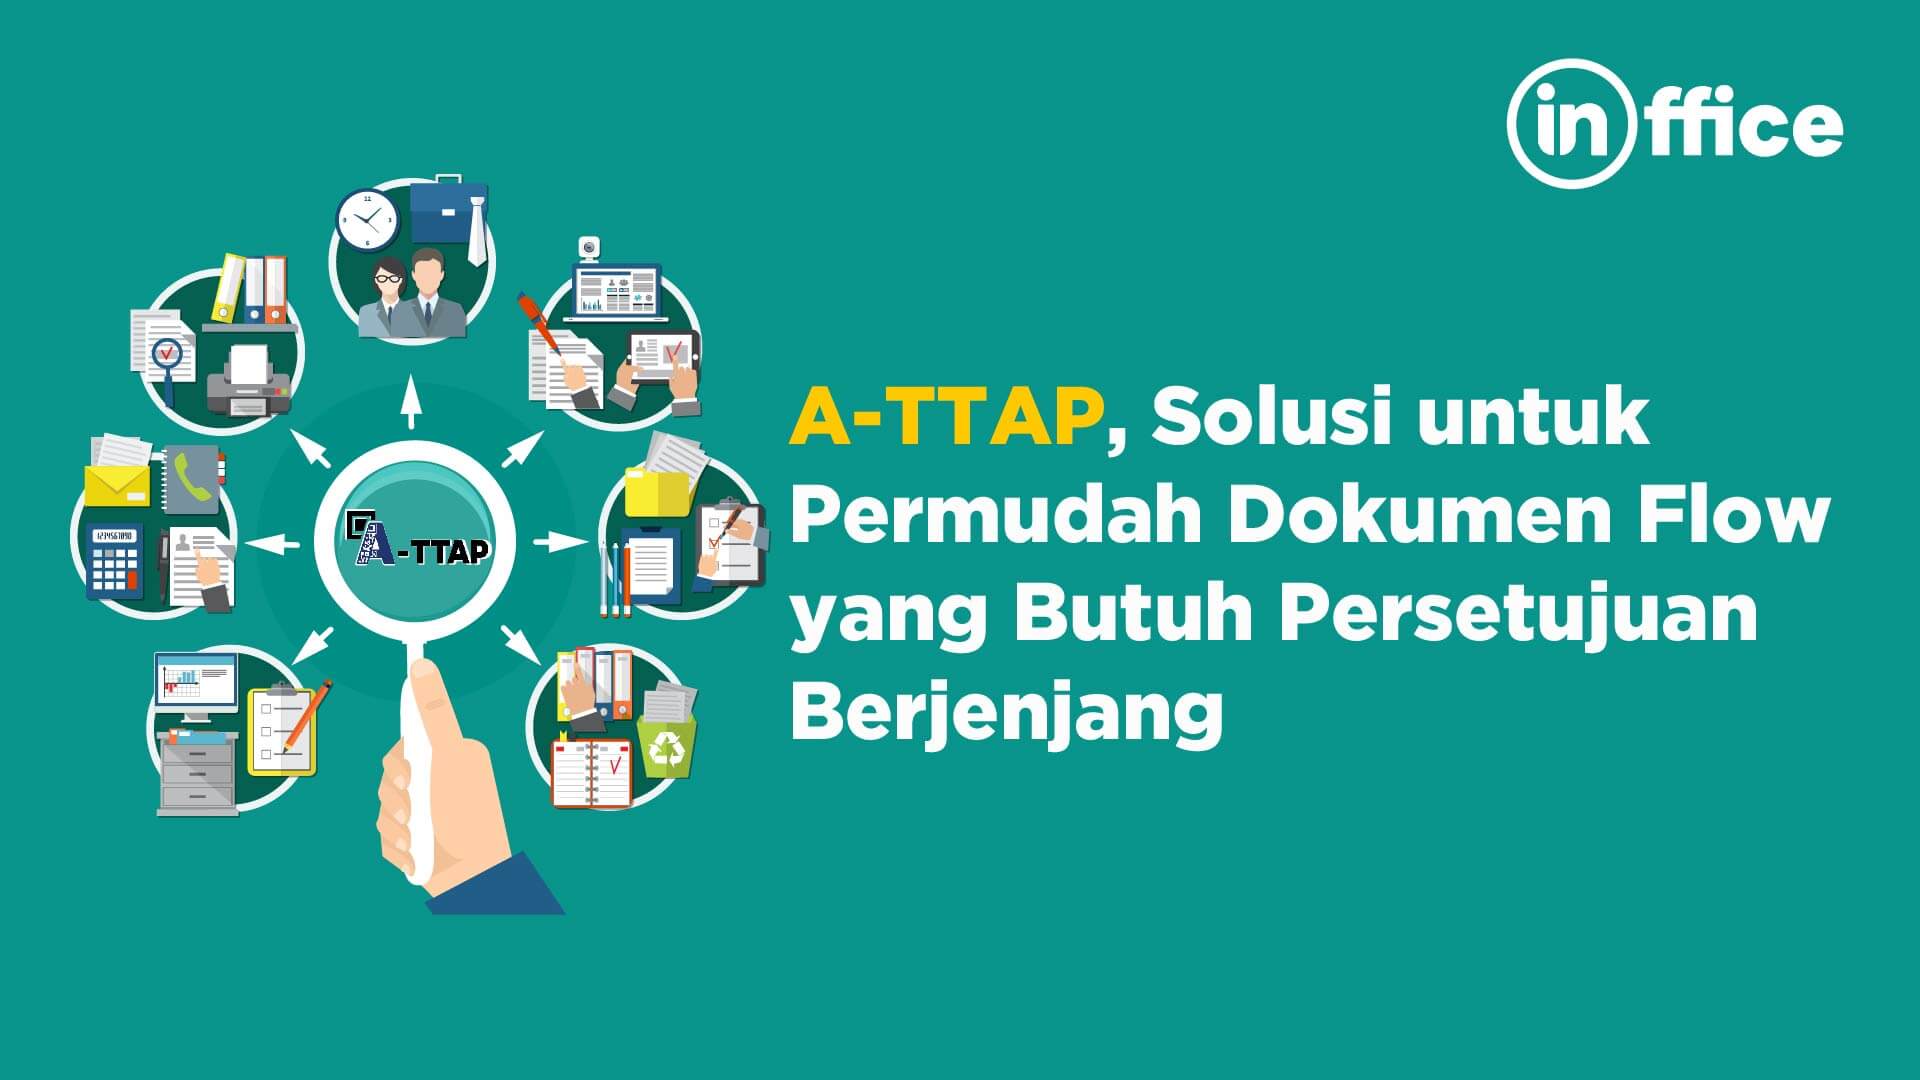 A-TTAP, Solusi Untuk Permudah Dokumen Flow yang Butuh Persetujuan Berjenjang